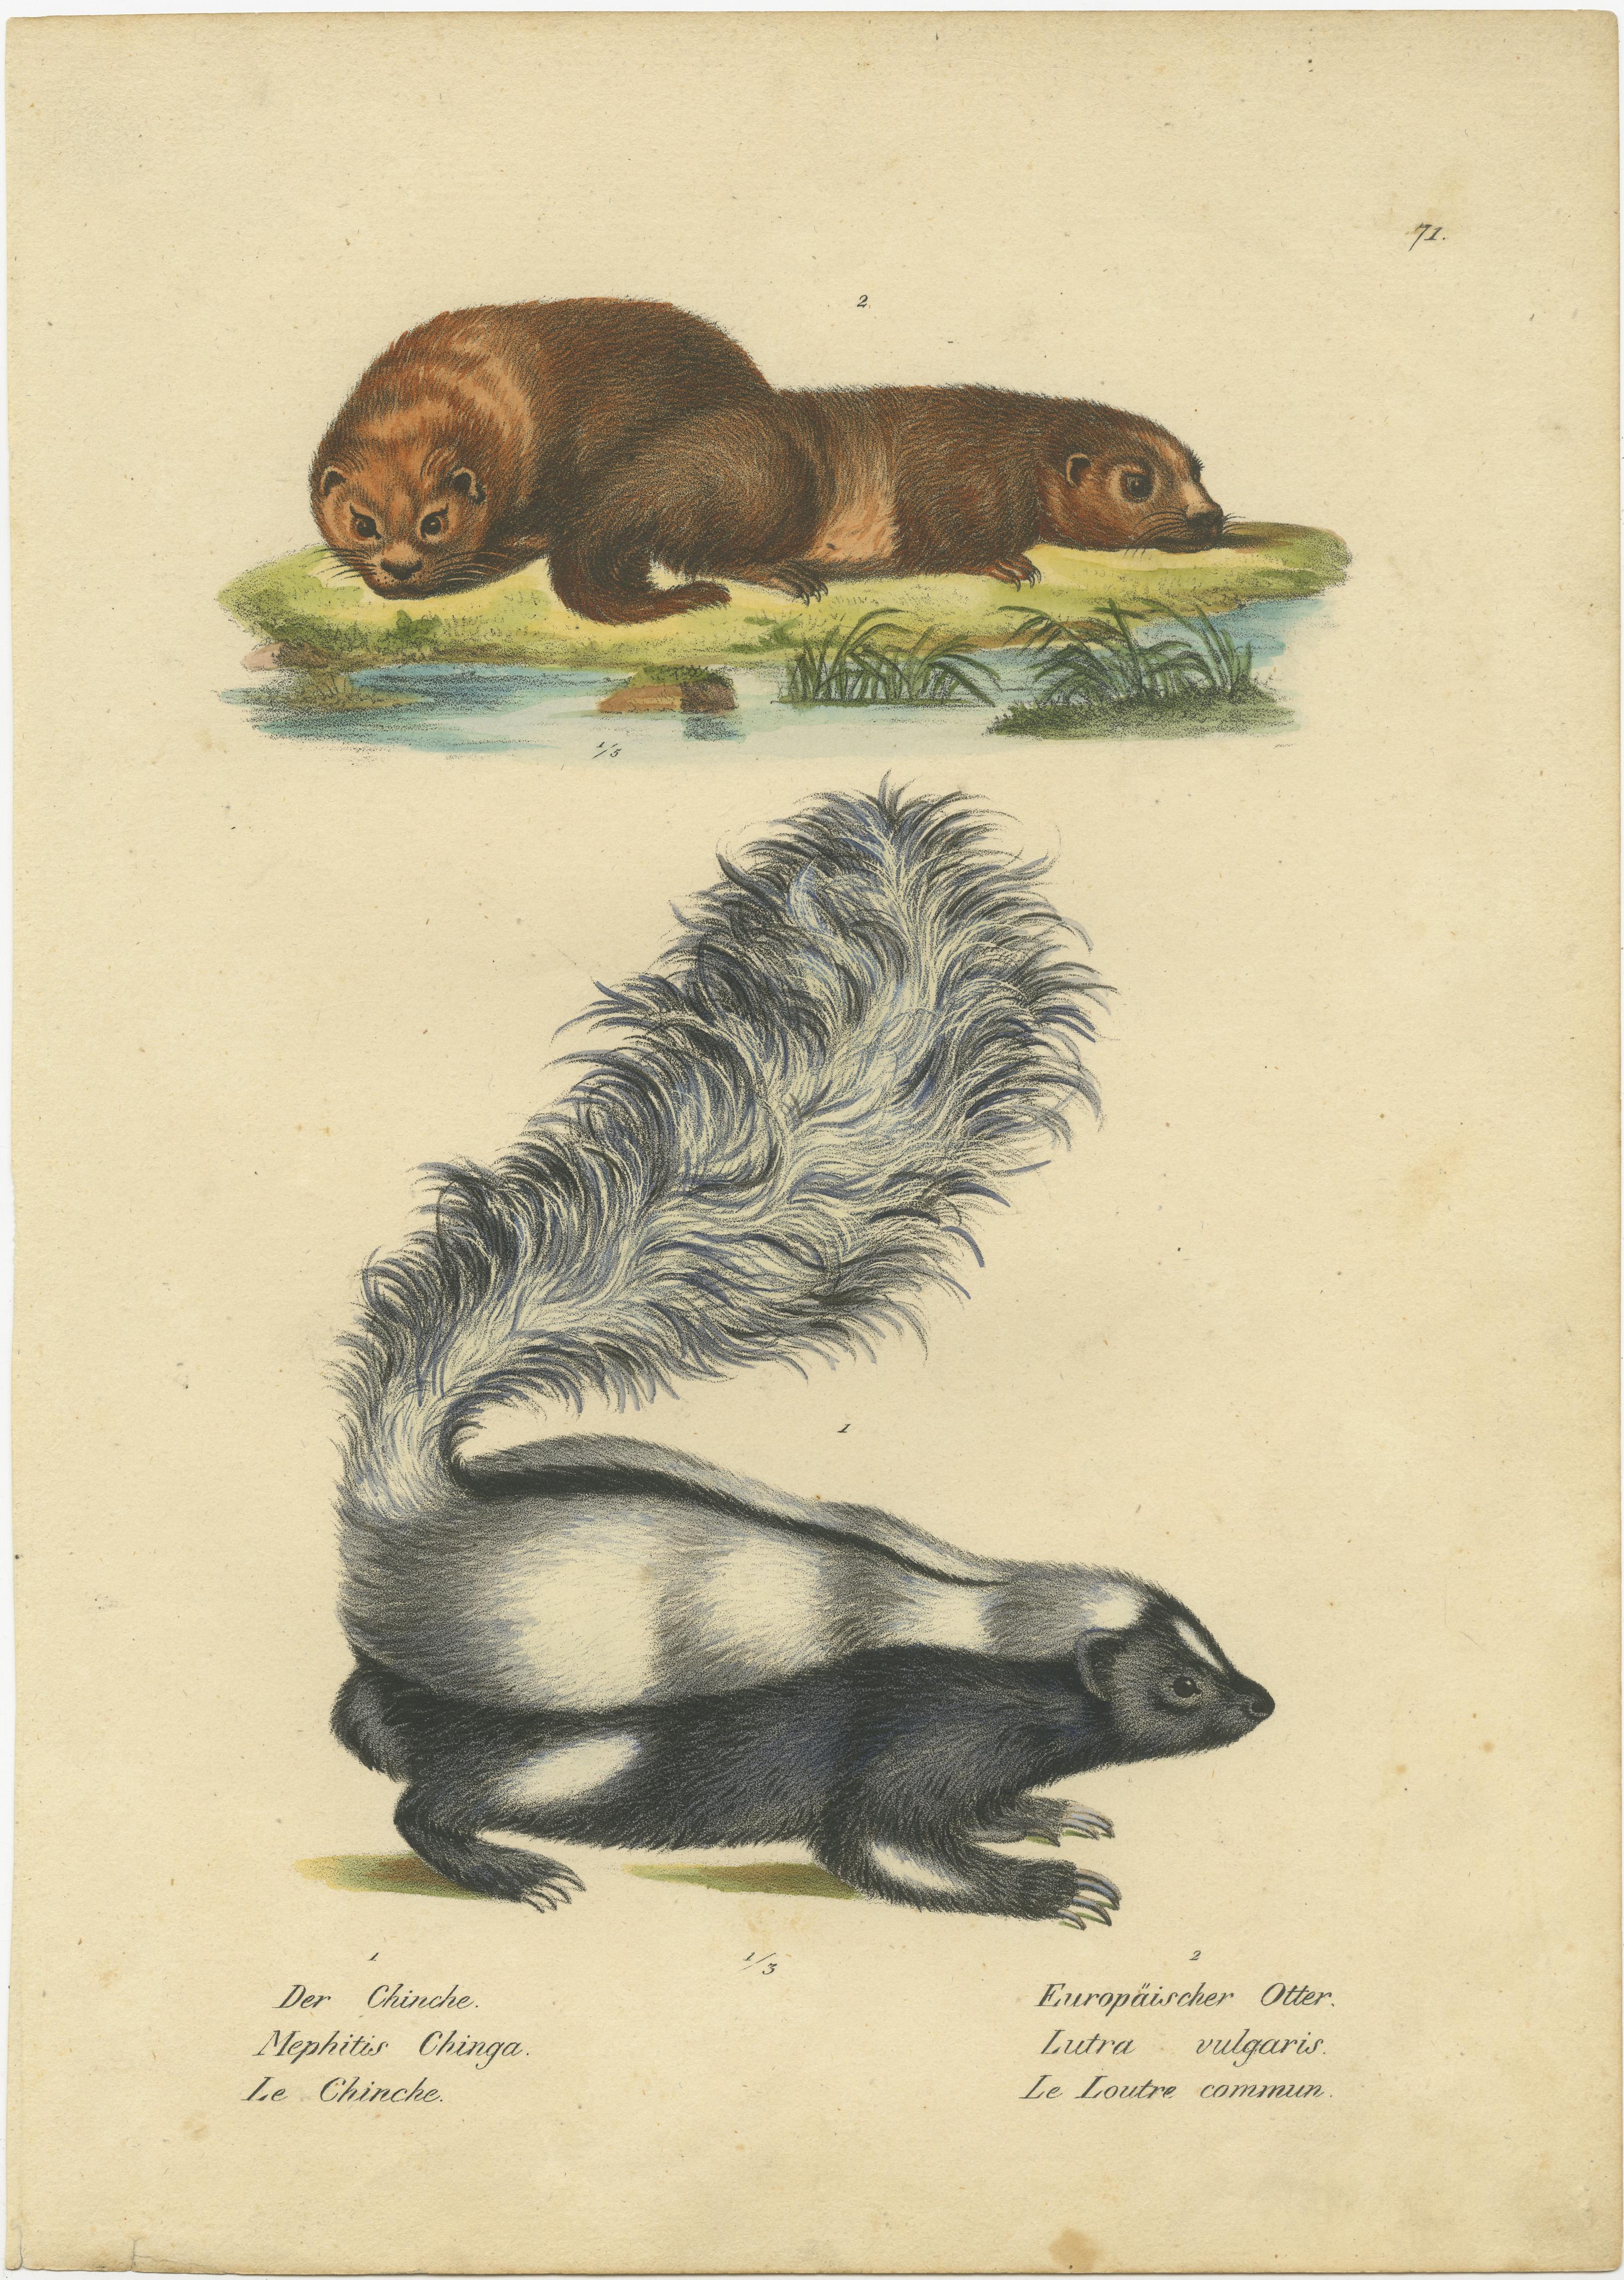 Antique print titled 'Der Chinche- Europäischer Otter'. Original antique print of a skunk and European otter. This print originates from 'Naturhistorische Abbildungen der Saeugethiere' by Schinz. Published 1824. Lithographs by Brodtmann.